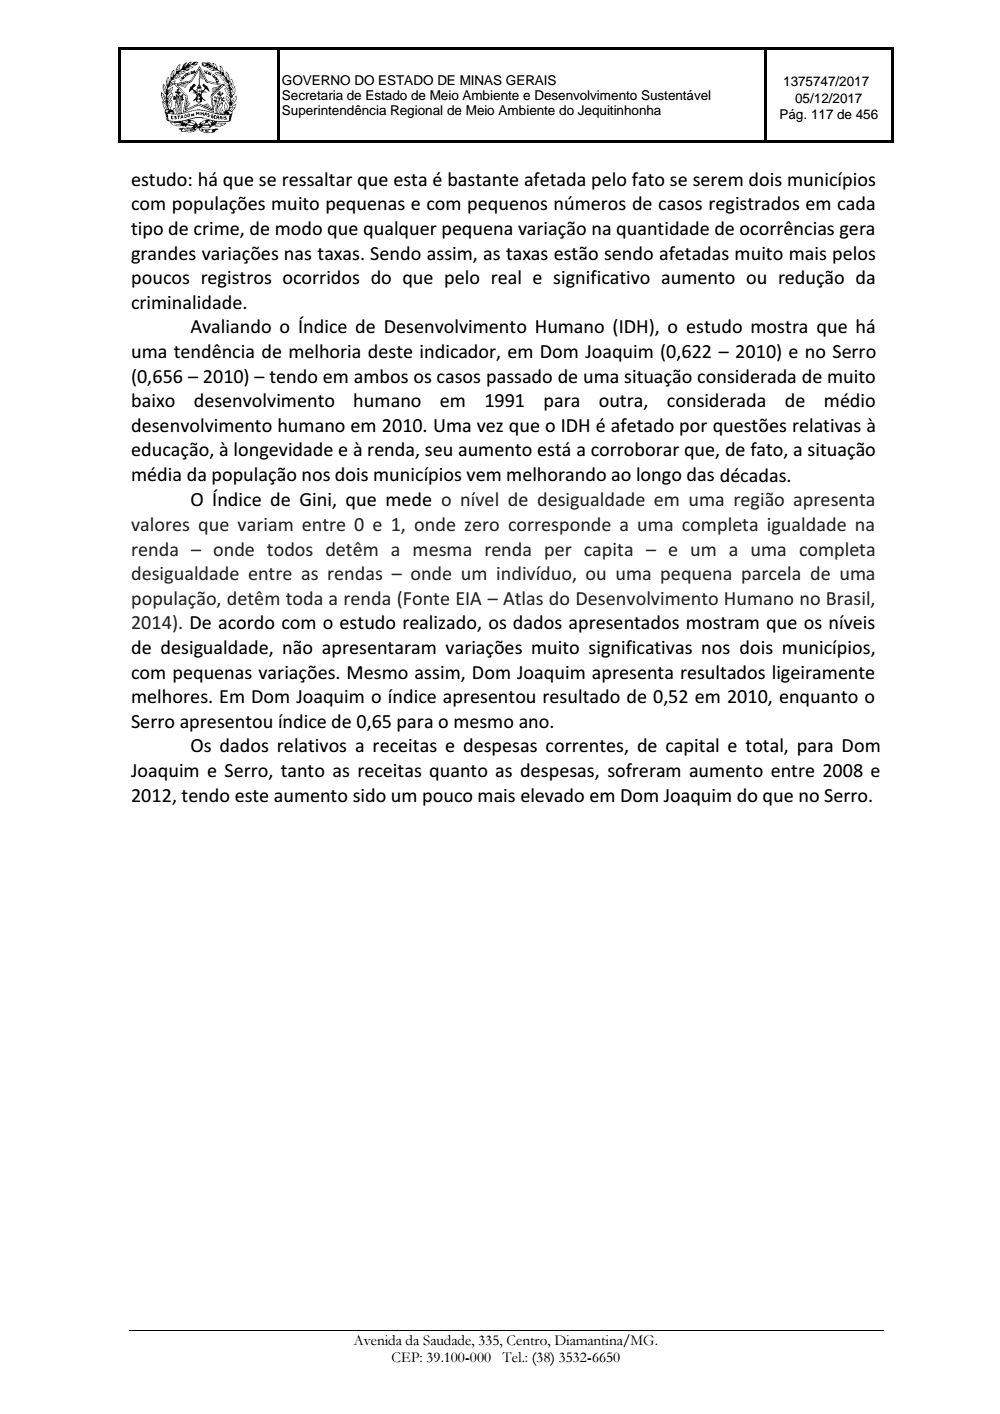 Page 117 from Parecer único da Secretaria de estado de Meio Ambiente e Desenvolvimento Sustentável (SEMAD)